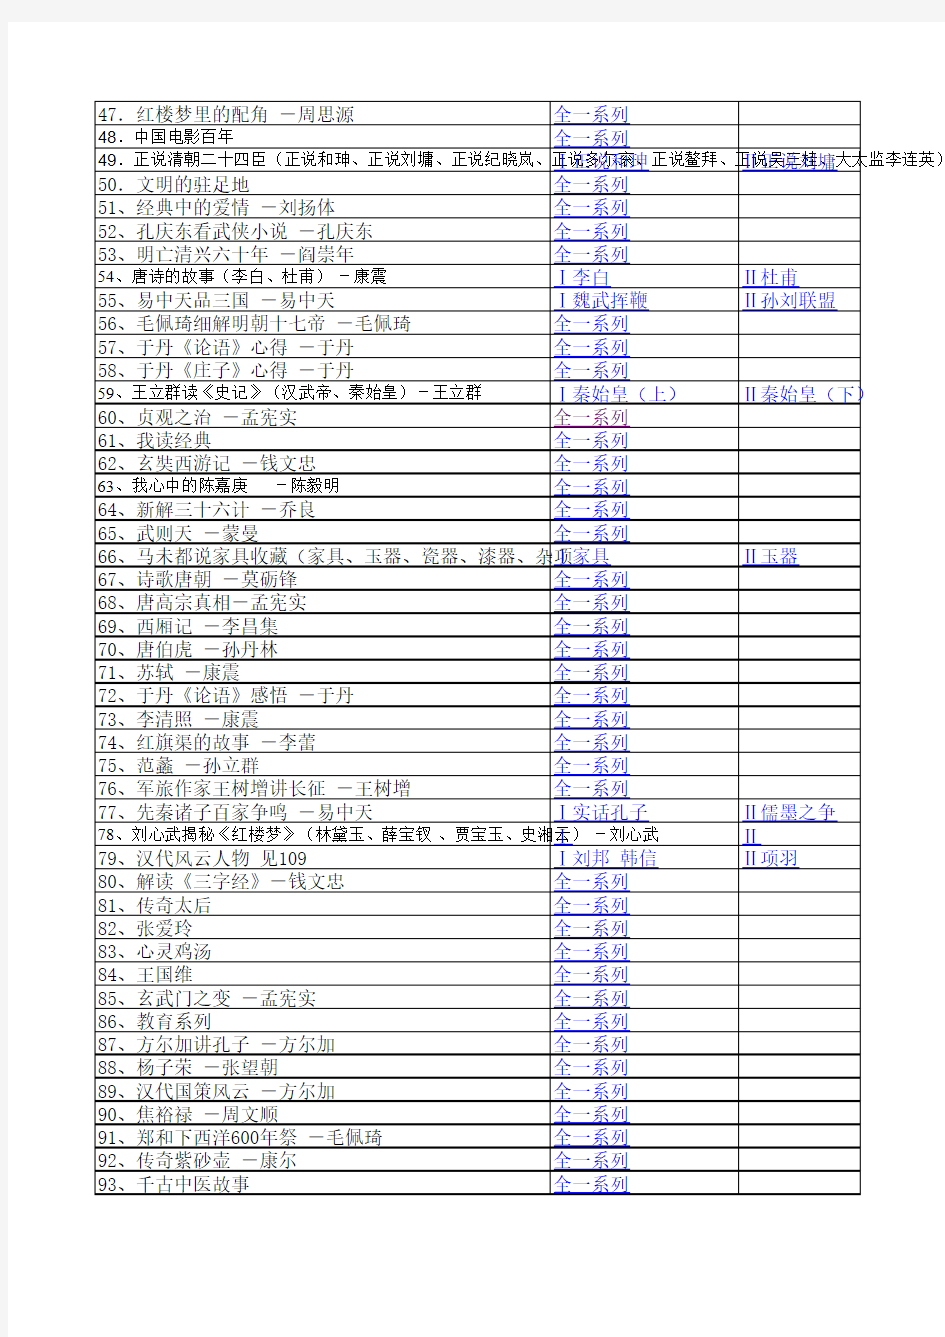 2001-2012年百家讲坛目录总表(附MP3版打包下载链接)